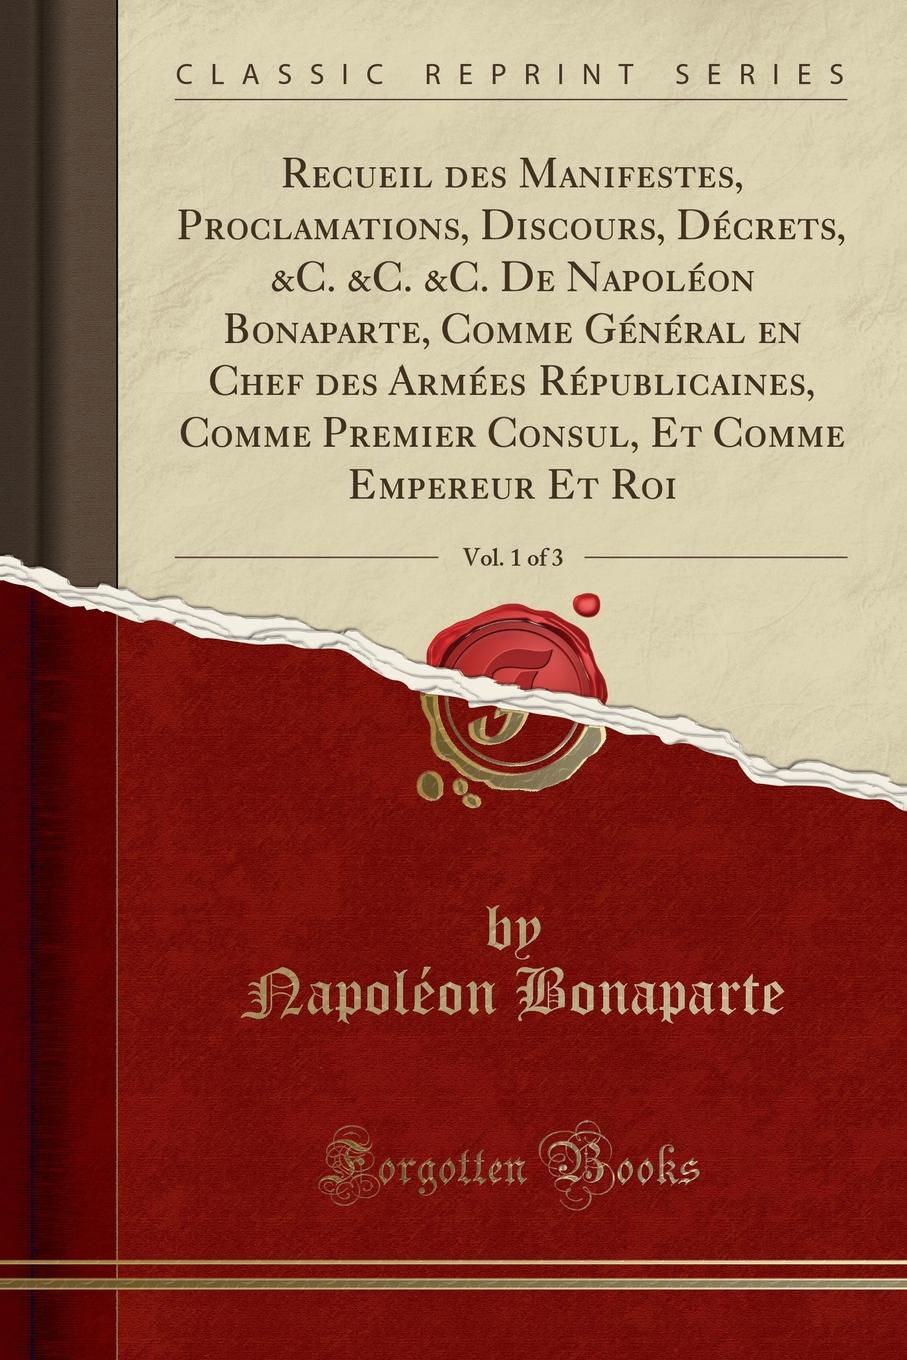 Napoléon Bonaparte Recueil des Manifestes, Proclamations, Discours, Decrets, .C. .C. .C. De Napoleon Bonaparte, Comme General en Chef des Armees Republicaines, Comme Premier Consul, Et Comme Empereur Et Roi, Vol. 1 of 3 (Classic Reprint)